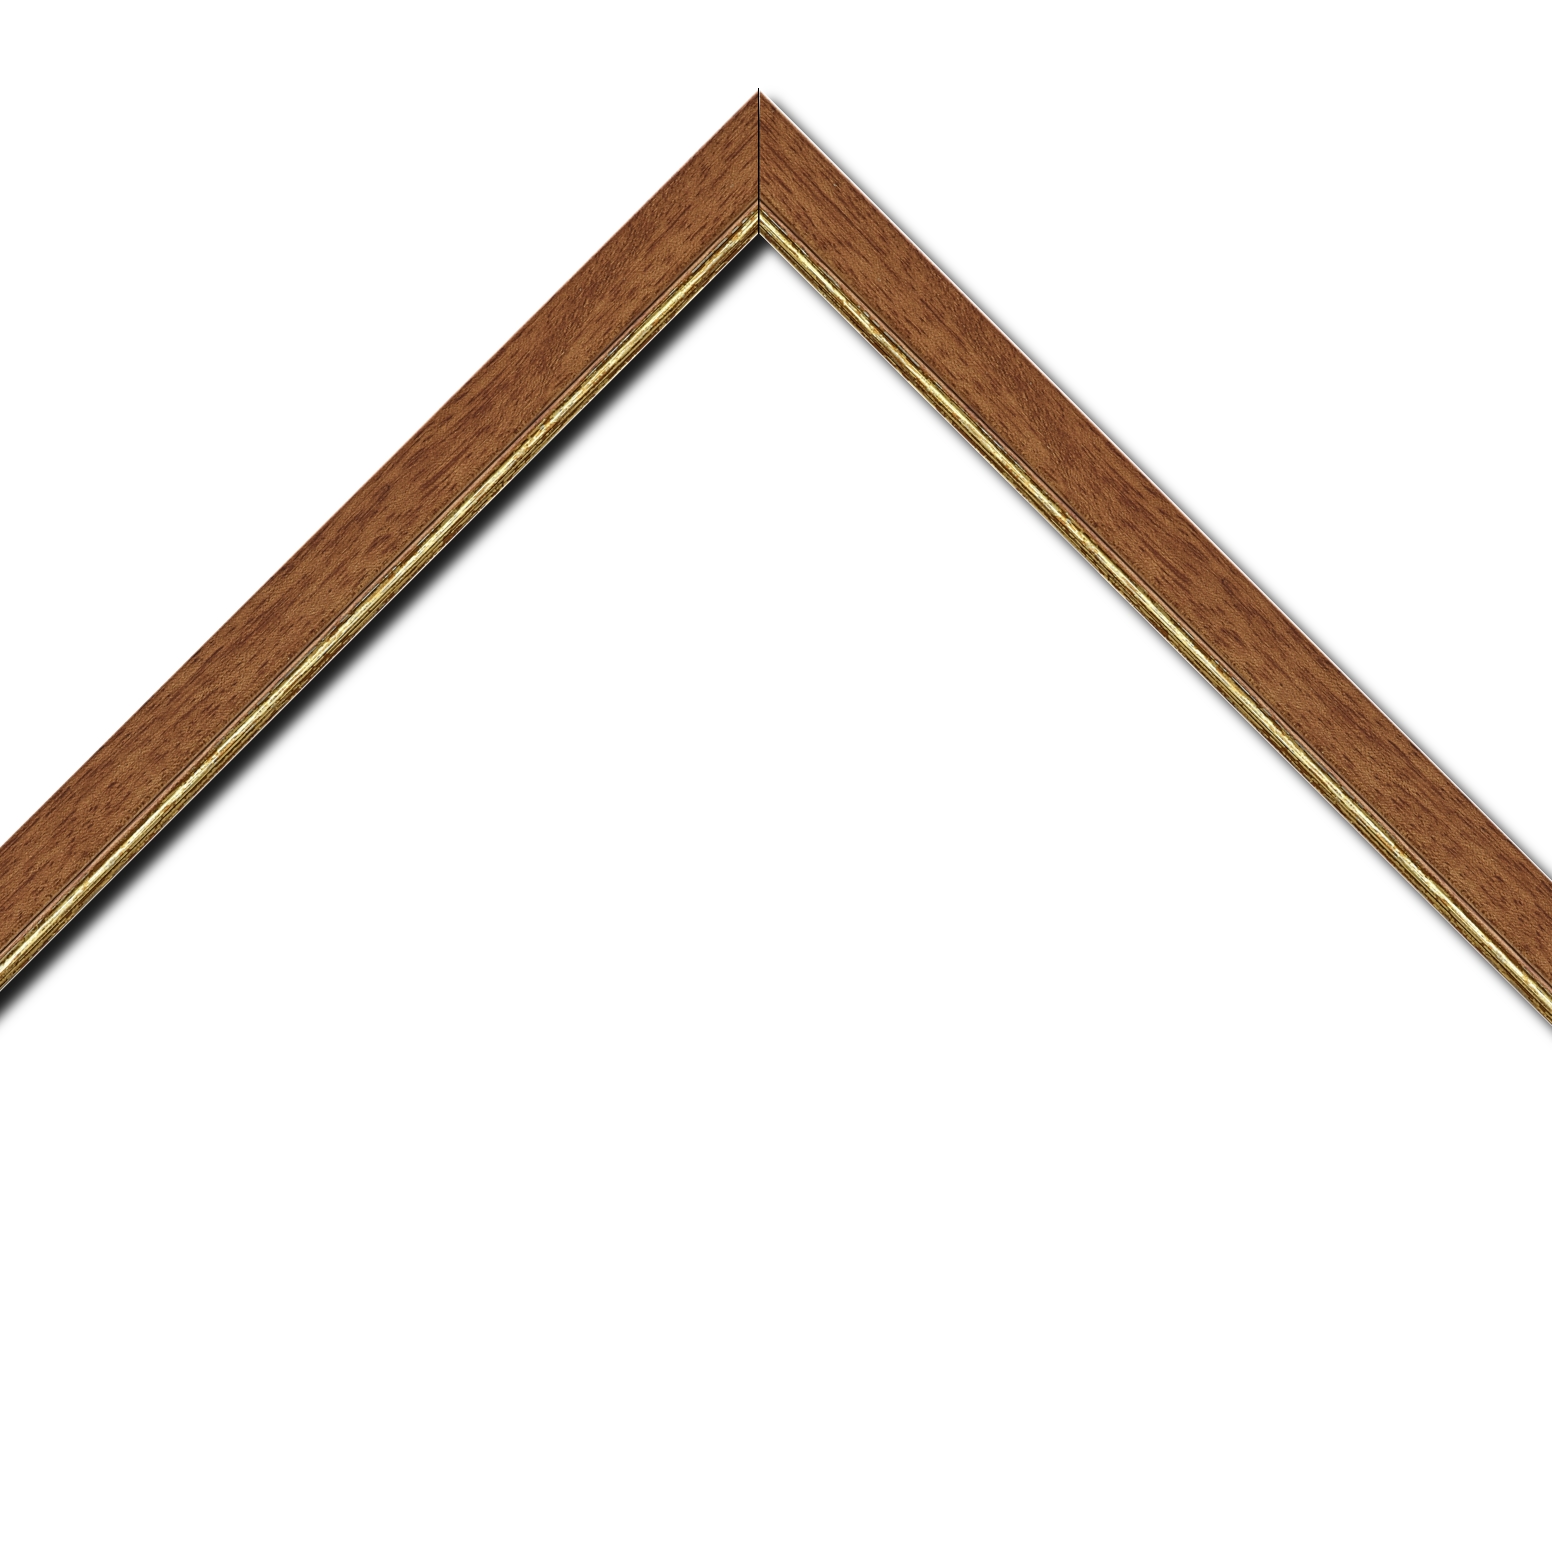 Baguette bois profil plat largeur 2.5cm couleur marron ton bois filet or